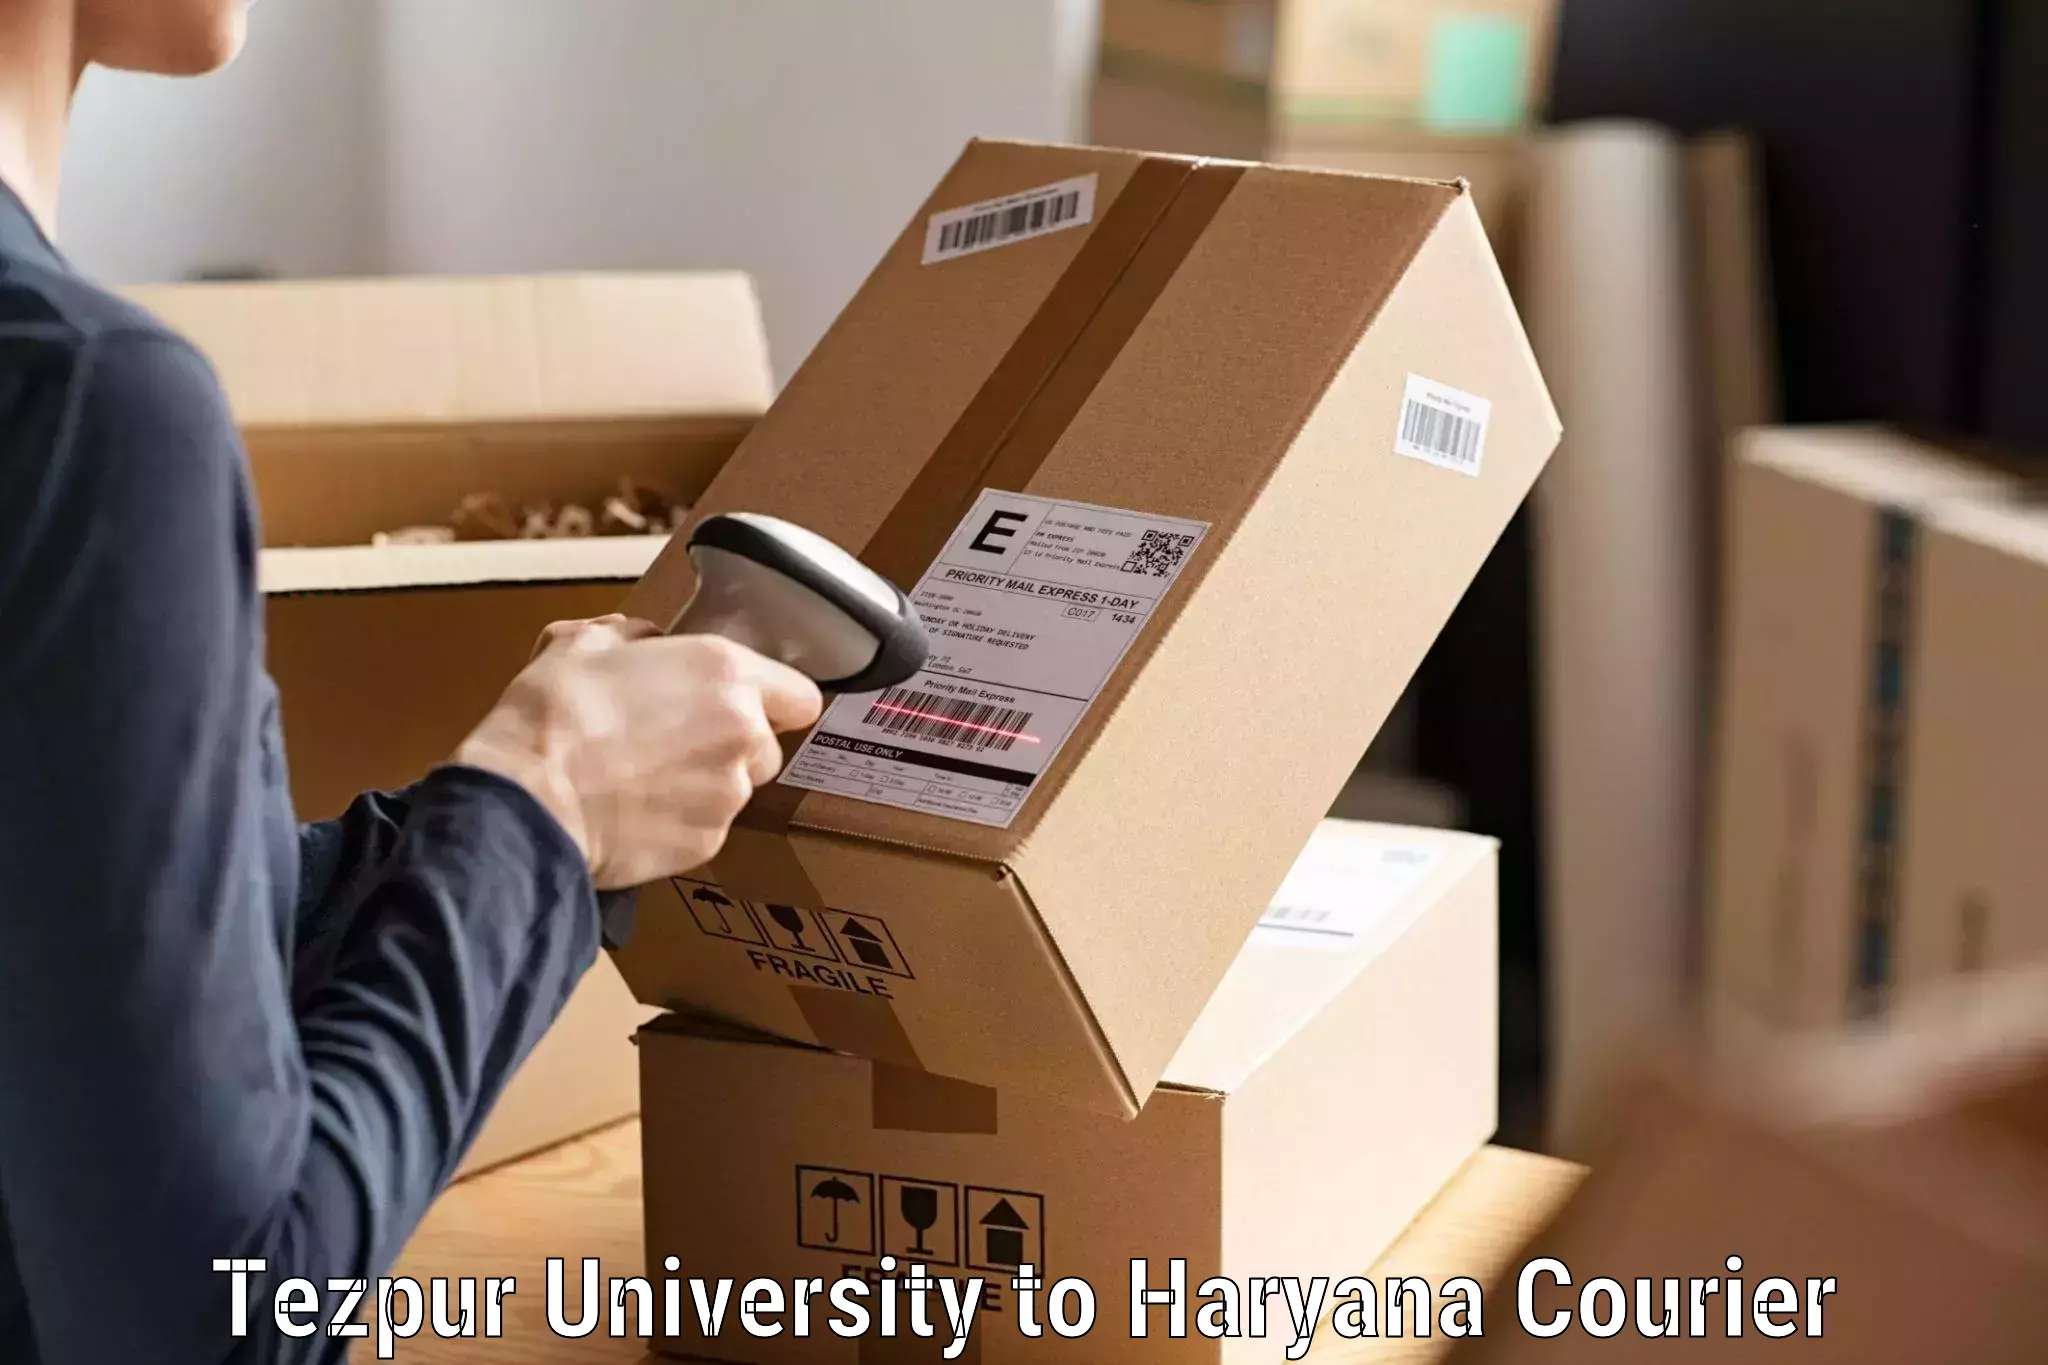 Competitive shipping rates Tezpur University to NIT Kurukshetra